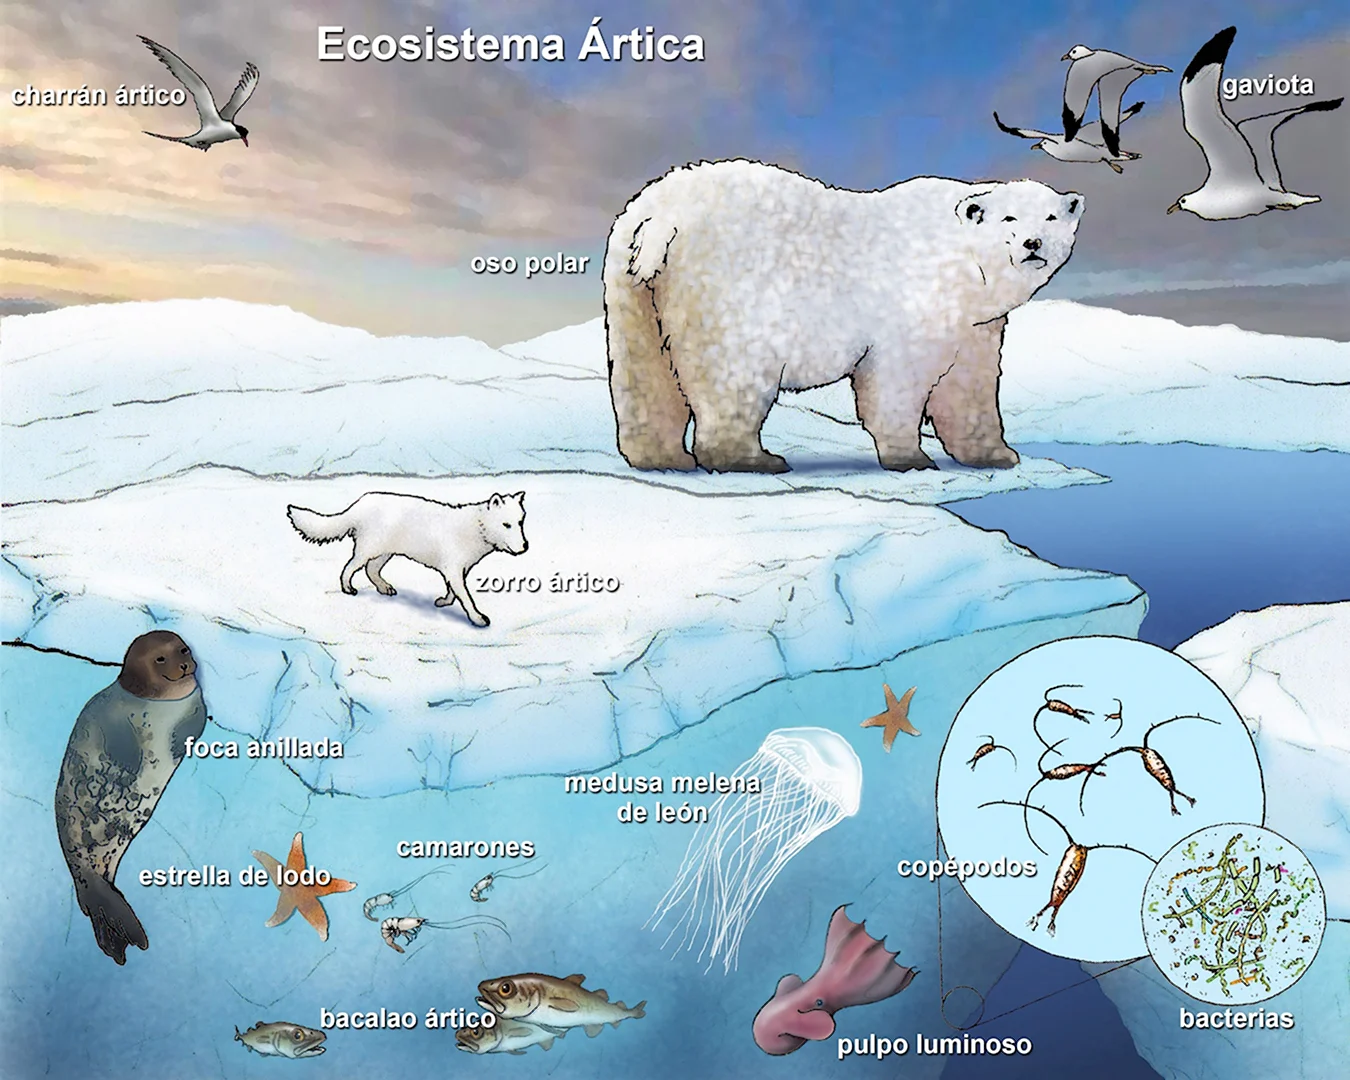 Экосистема арктических пустынь